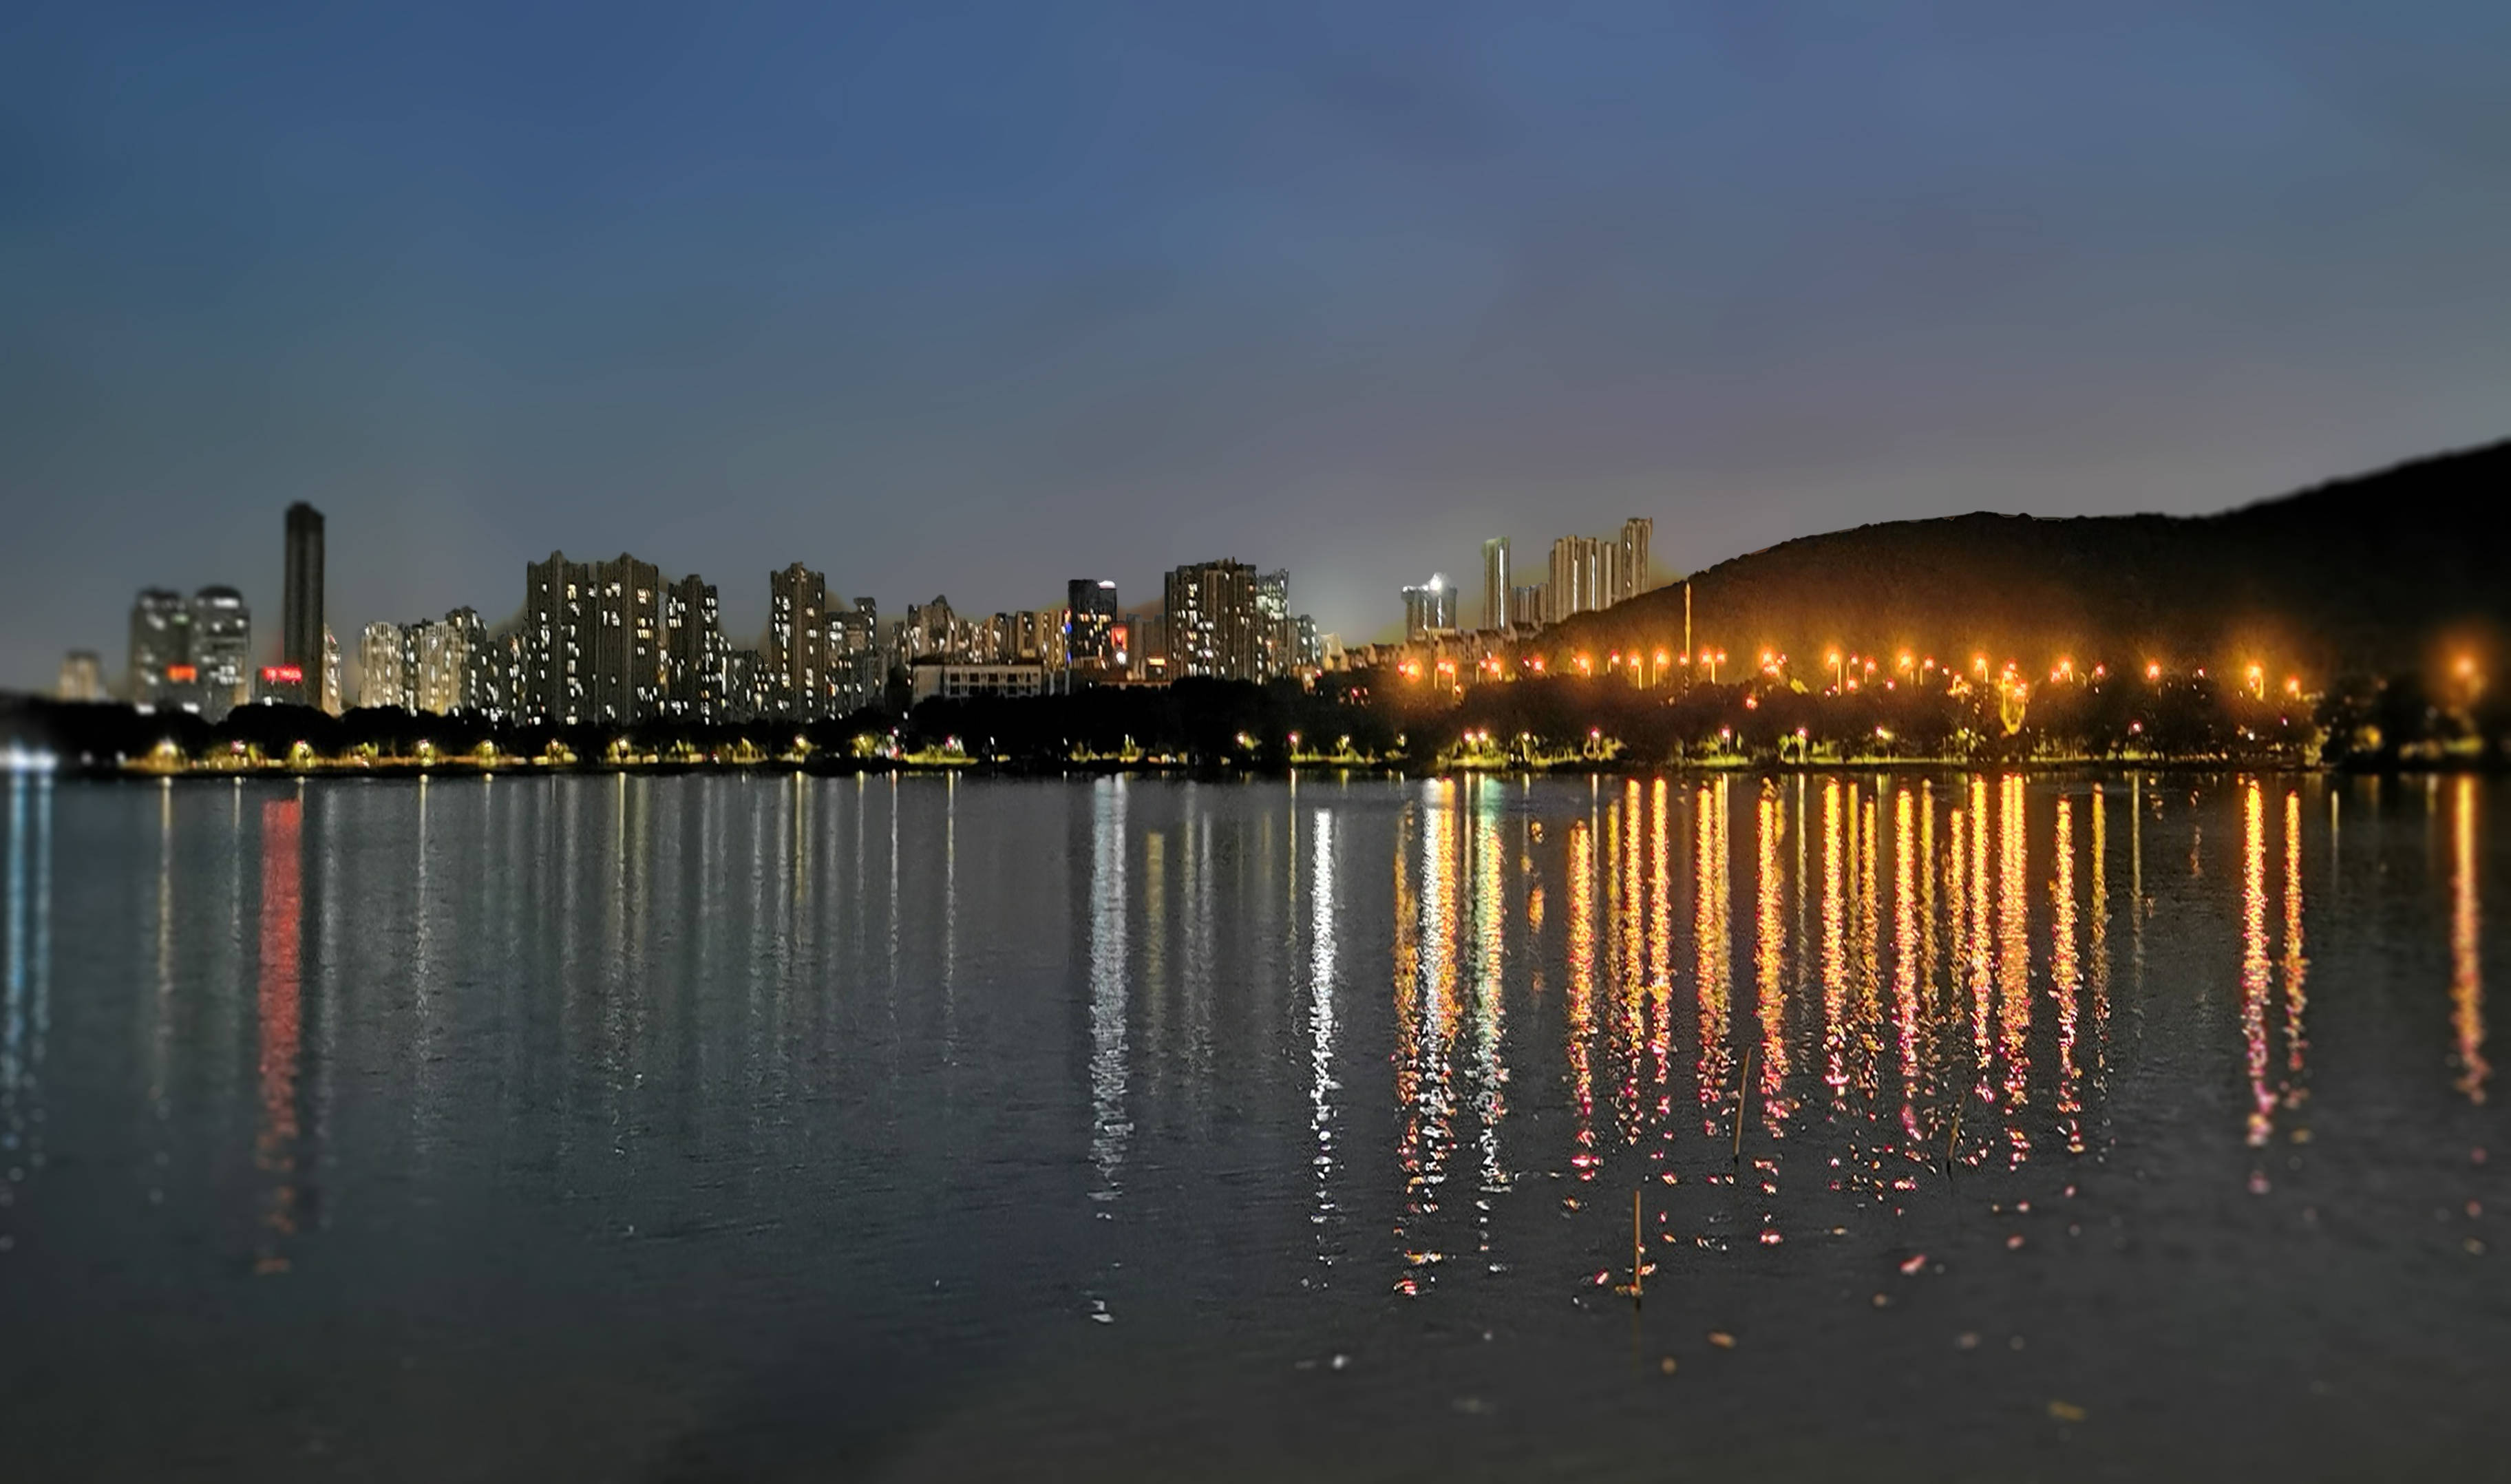 漂亮,武汉东湖夜景倒影实在漂亮